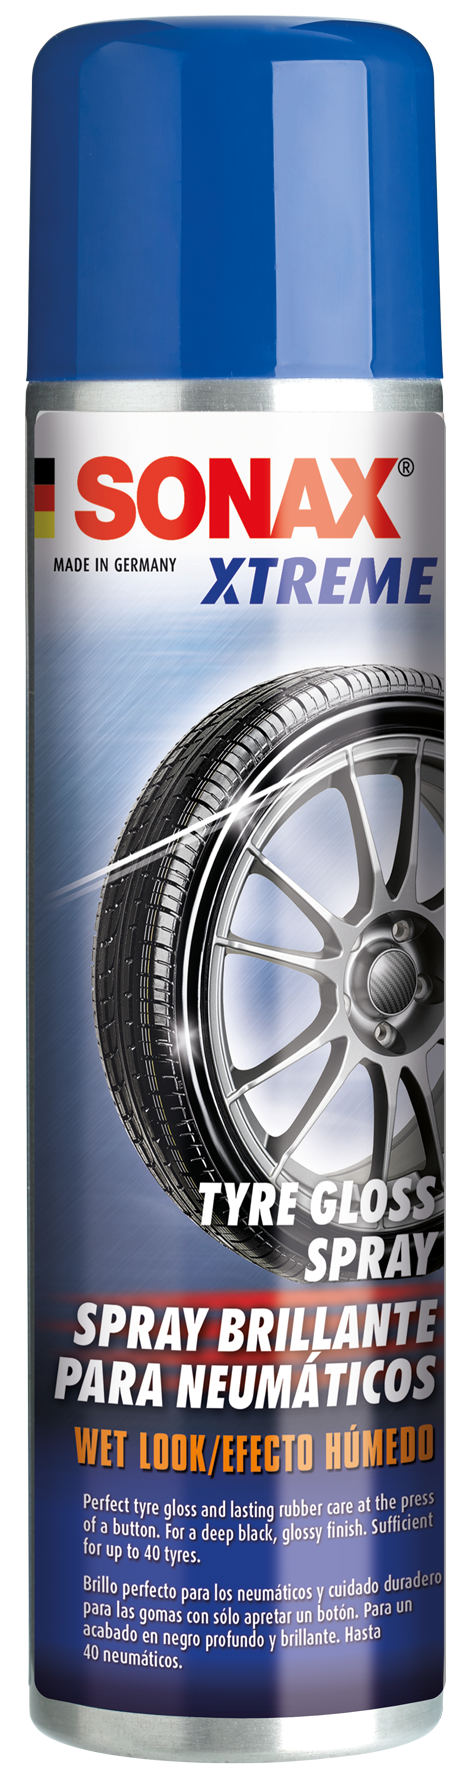 XTREME Tire Gloss Spray- XTREME Bảo Vệ Bóng Lốp (Vỏ) Dạng Phun